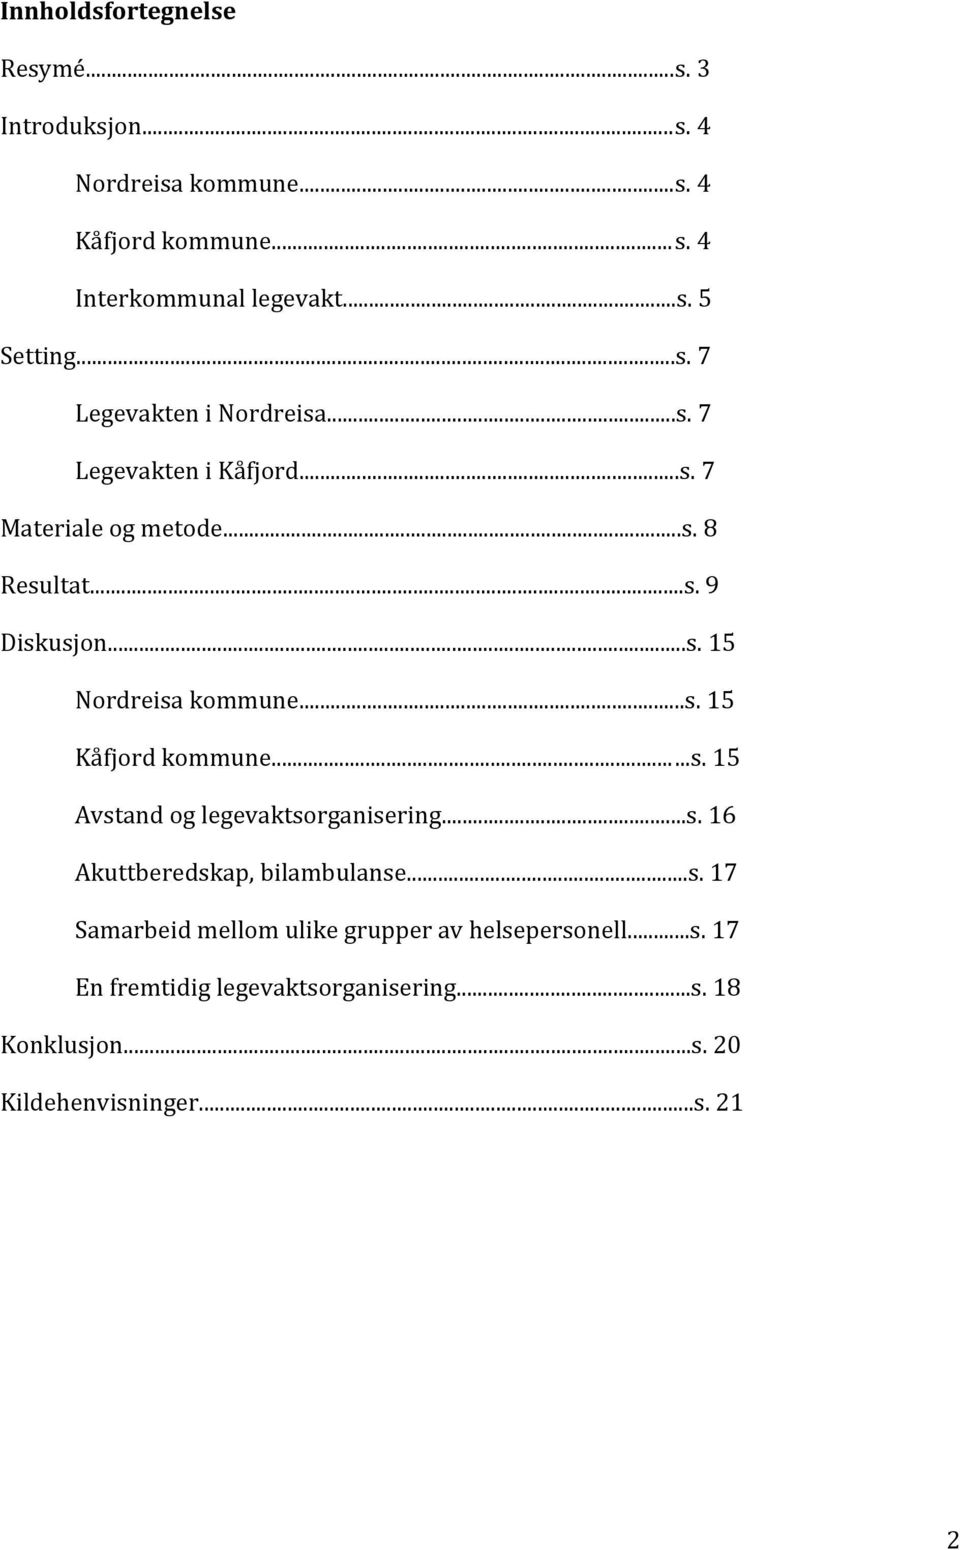 ..s. 15 Kåfjord kommune......s. 15 Avstand og legevaktsorganisering...s. 16 Akuttberedskap, bilambulanse...s. 17 Samarbeid mellom ulike grupper av helsepersonell.